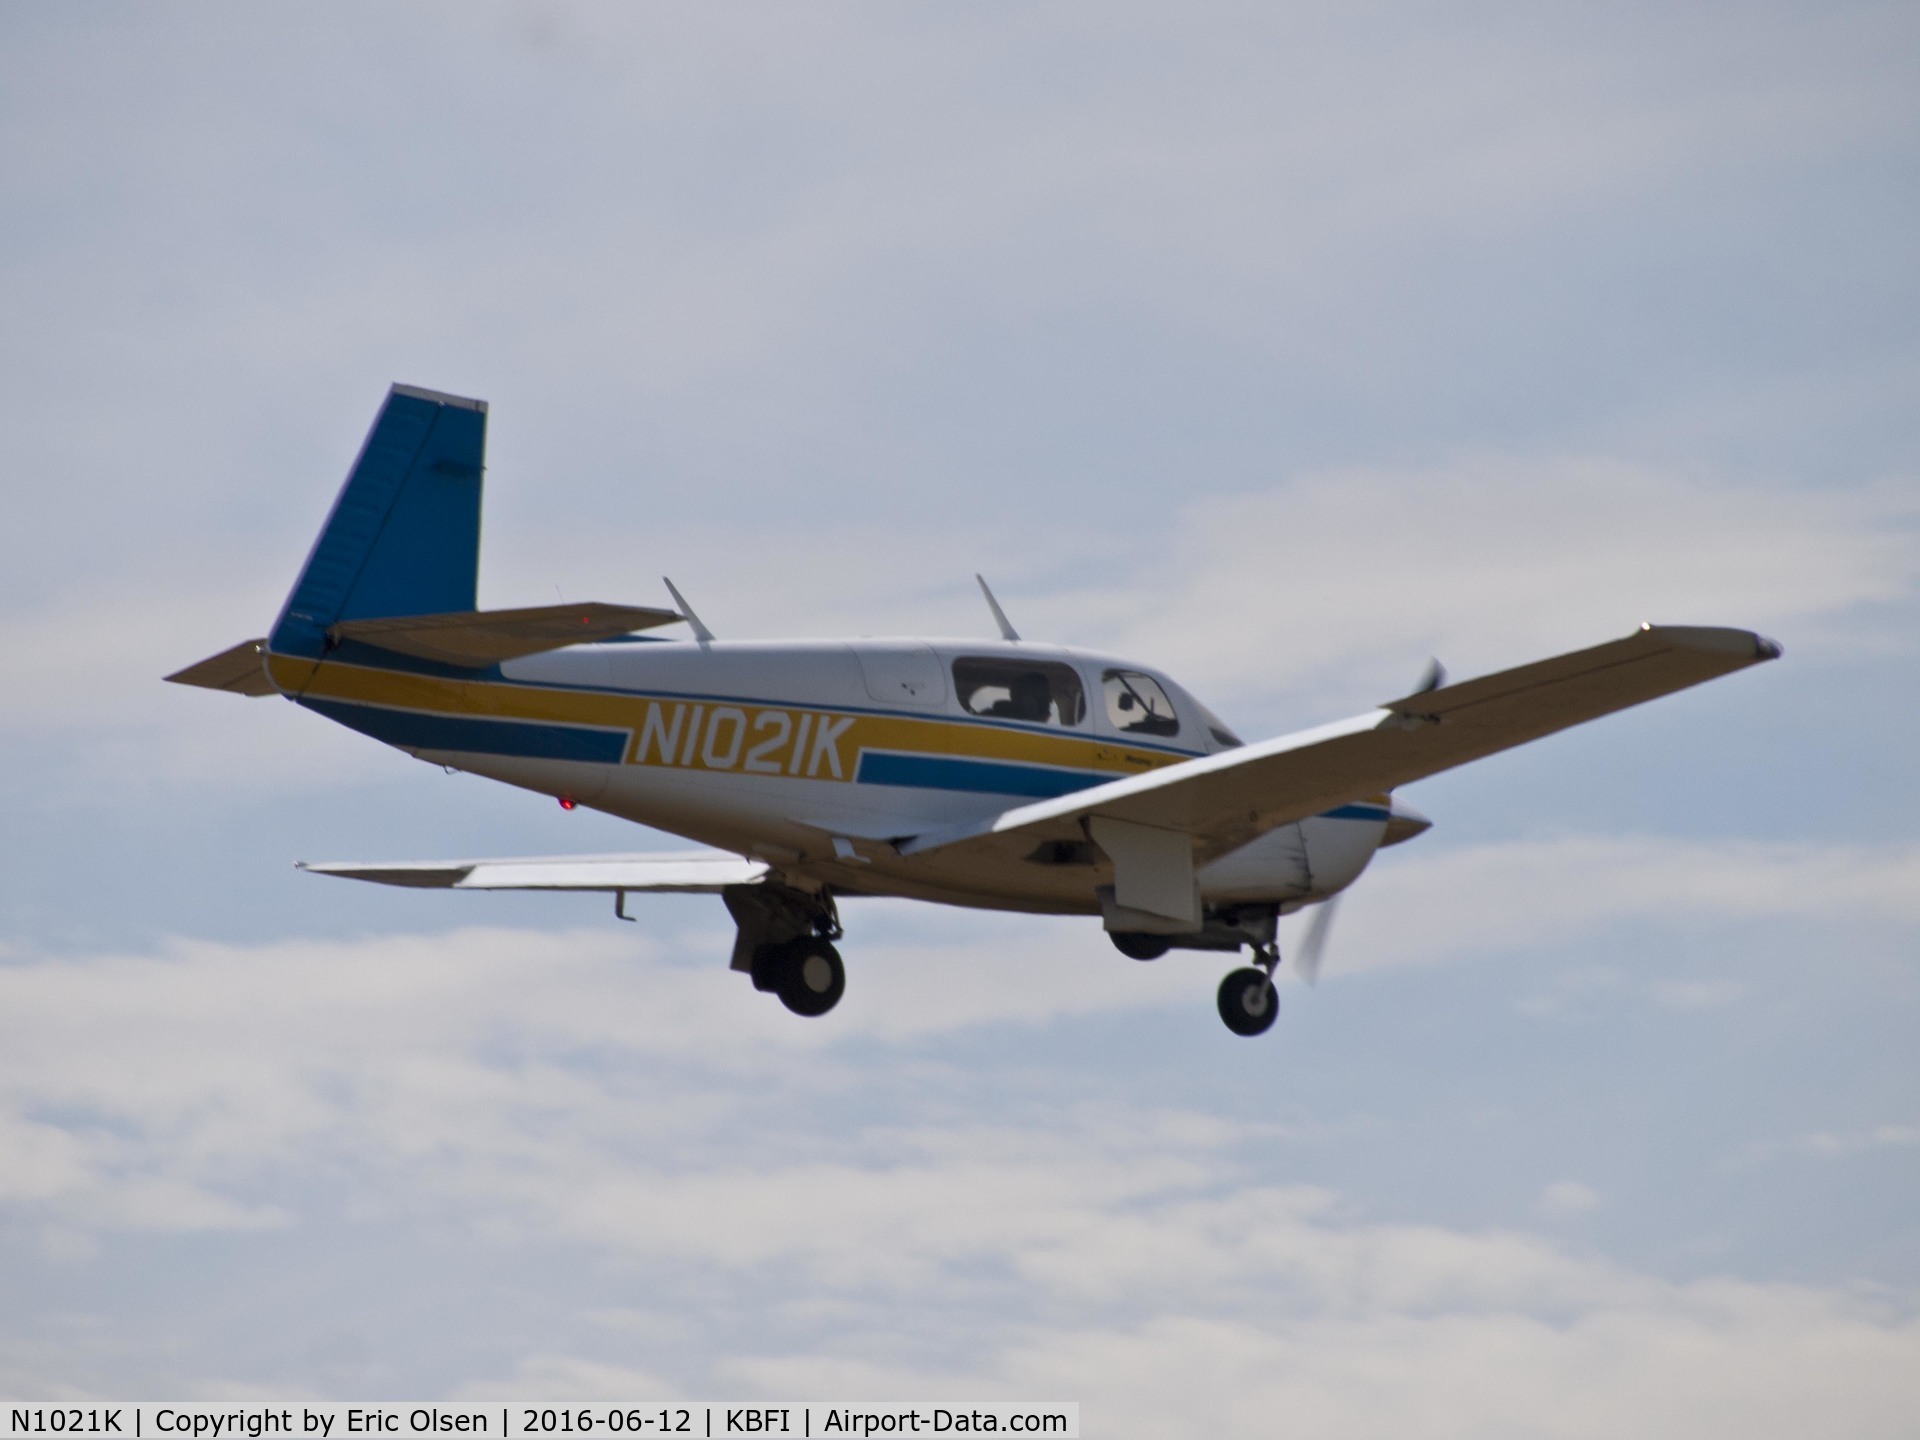 N1021K, Mooney M20J 201 C/N 24-3104, Mooney M20J over Boeing Field